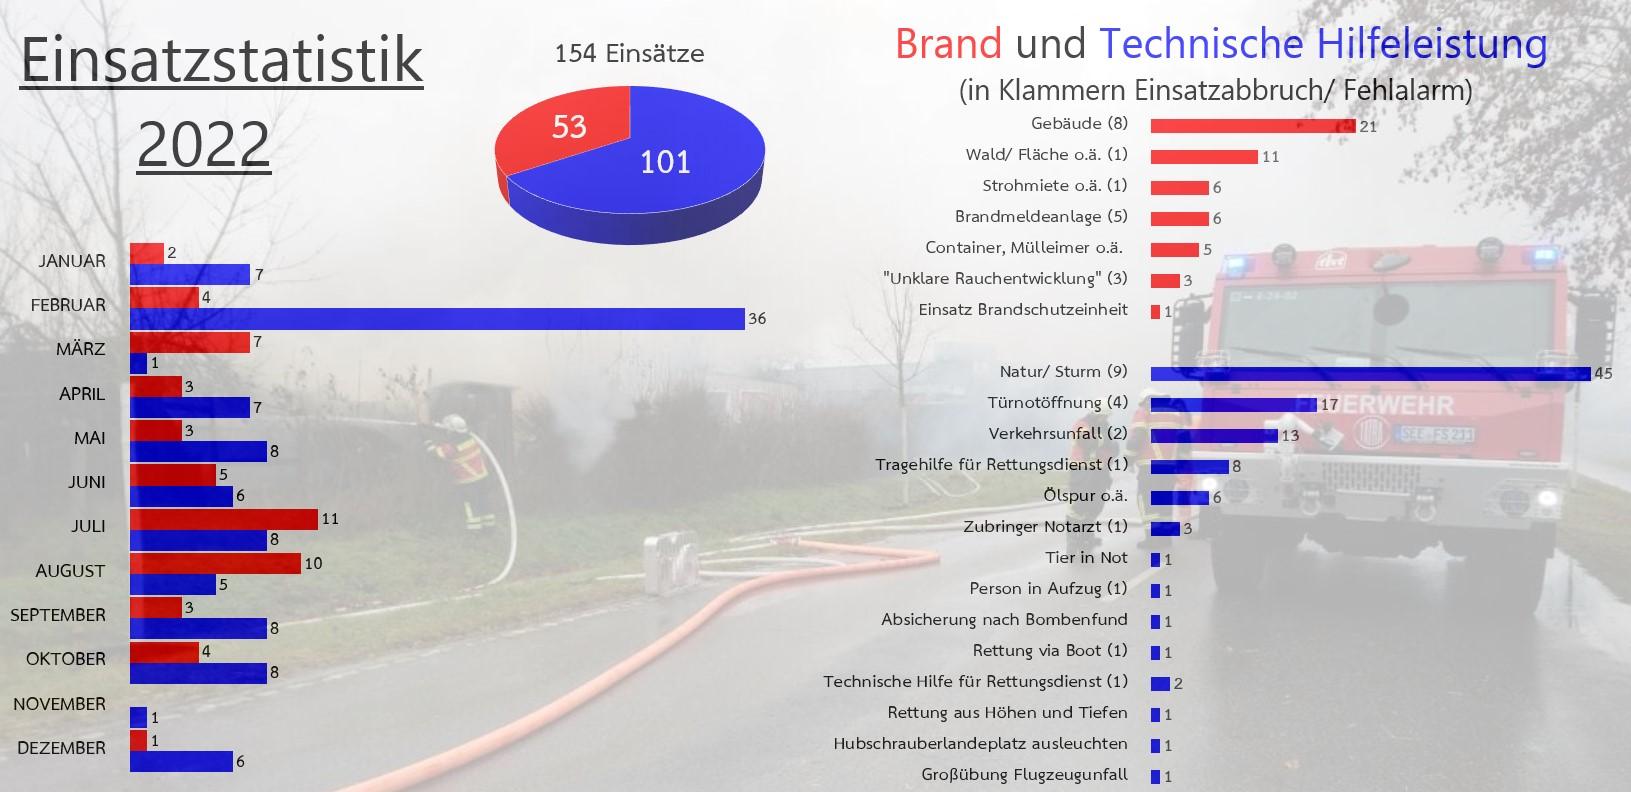 Einsatzstatistik 2022 der Freiwilligen Feuerwehr Seelow